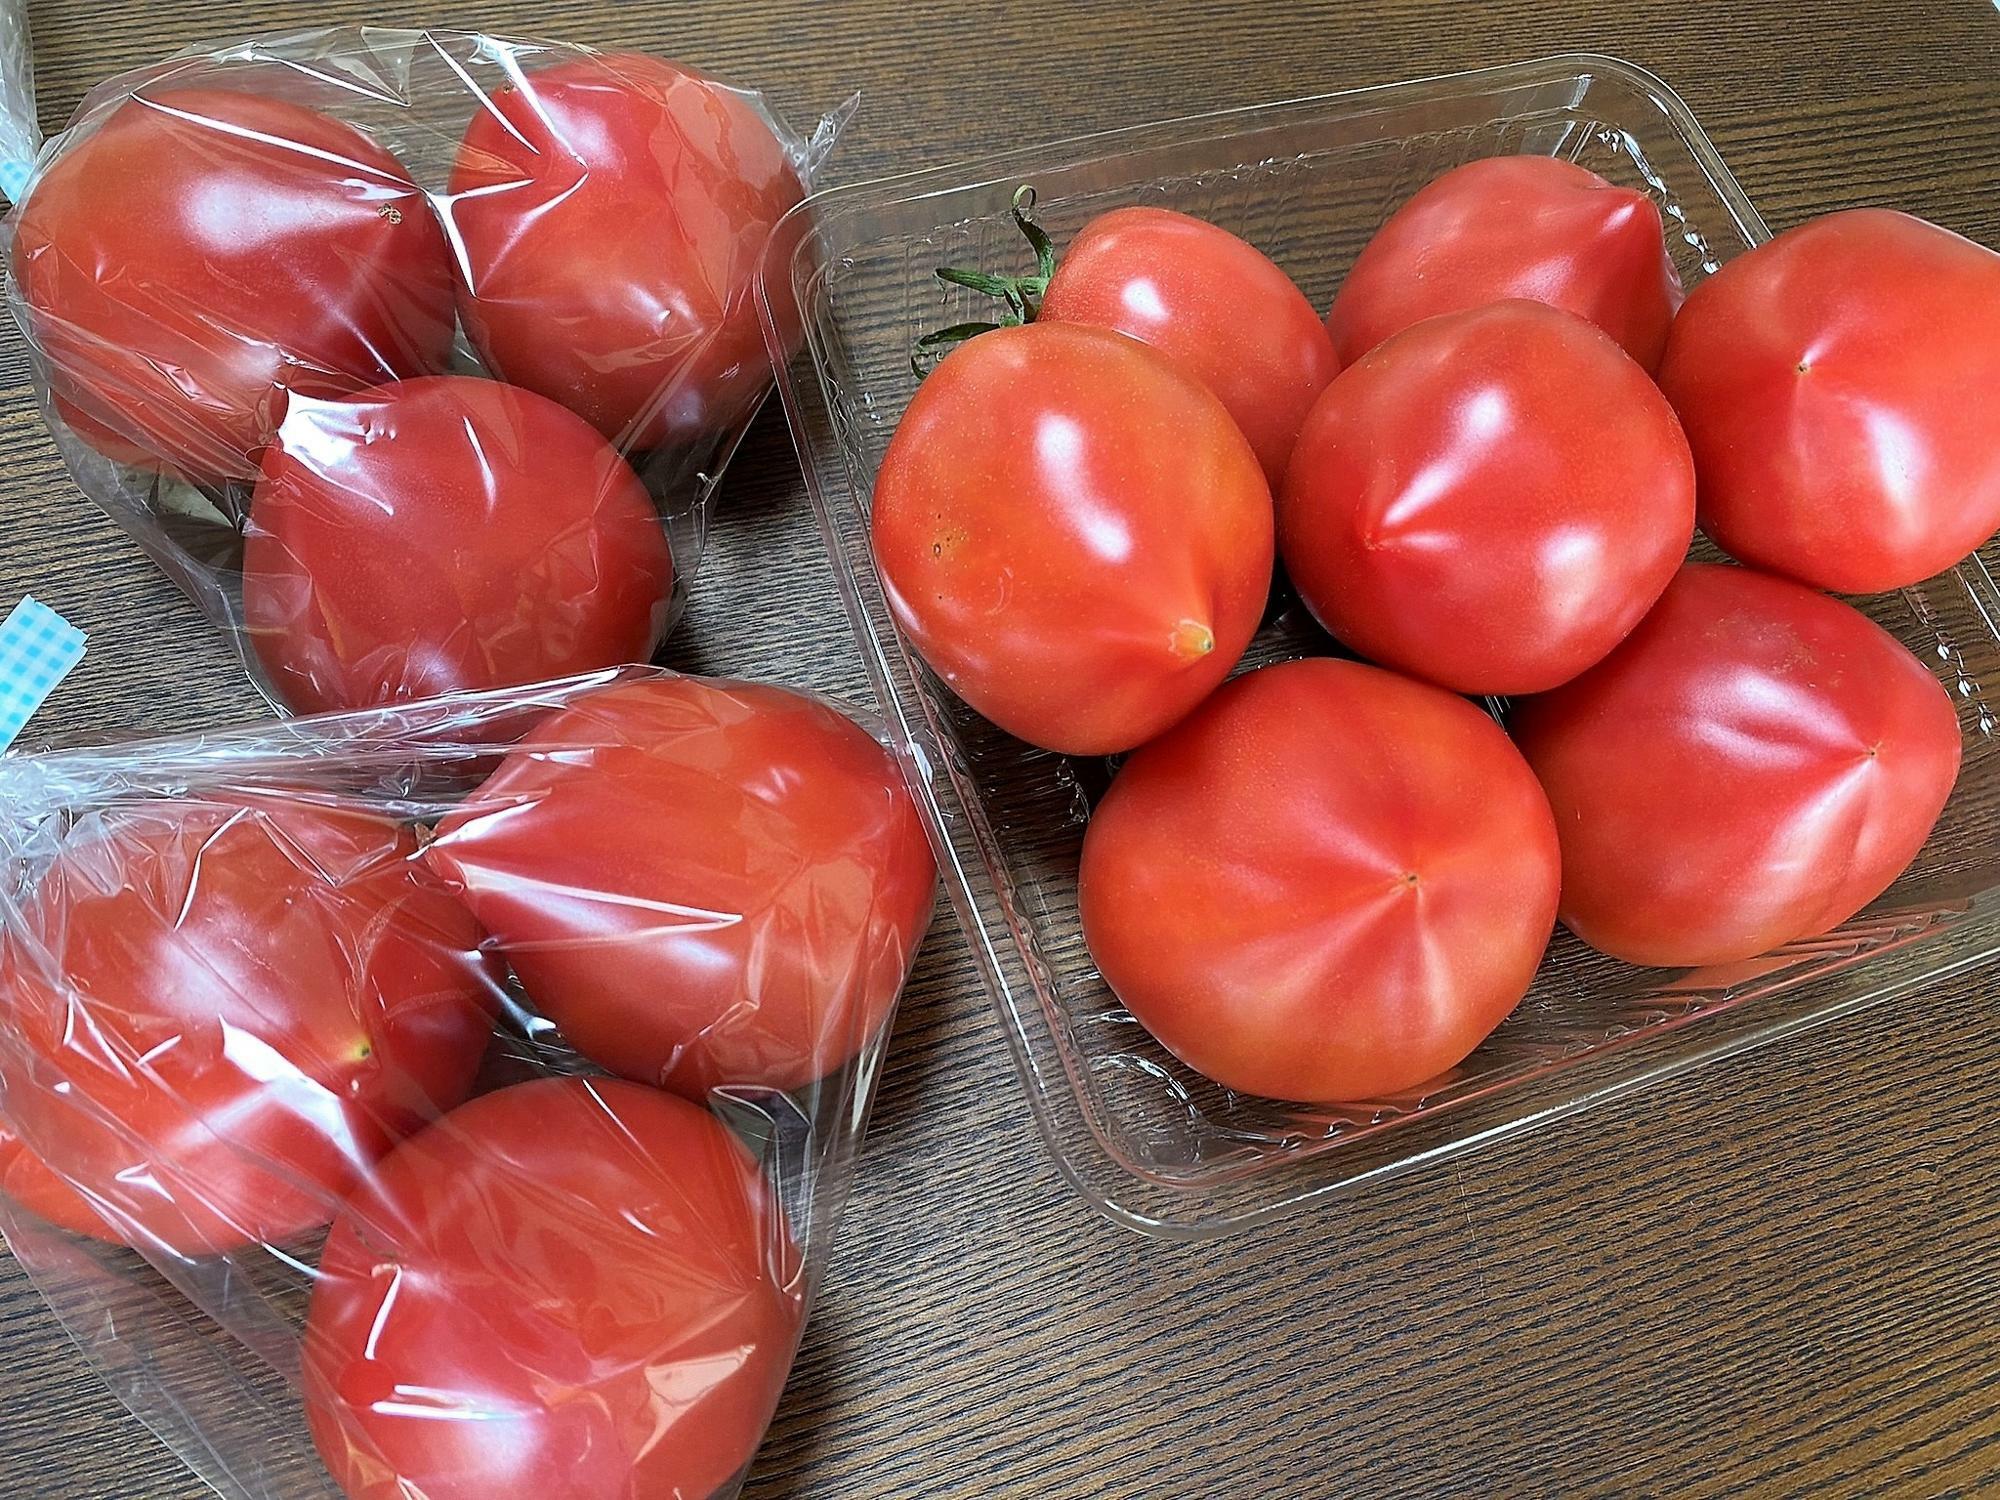 「お土産トマト」と「山盛りトマト」